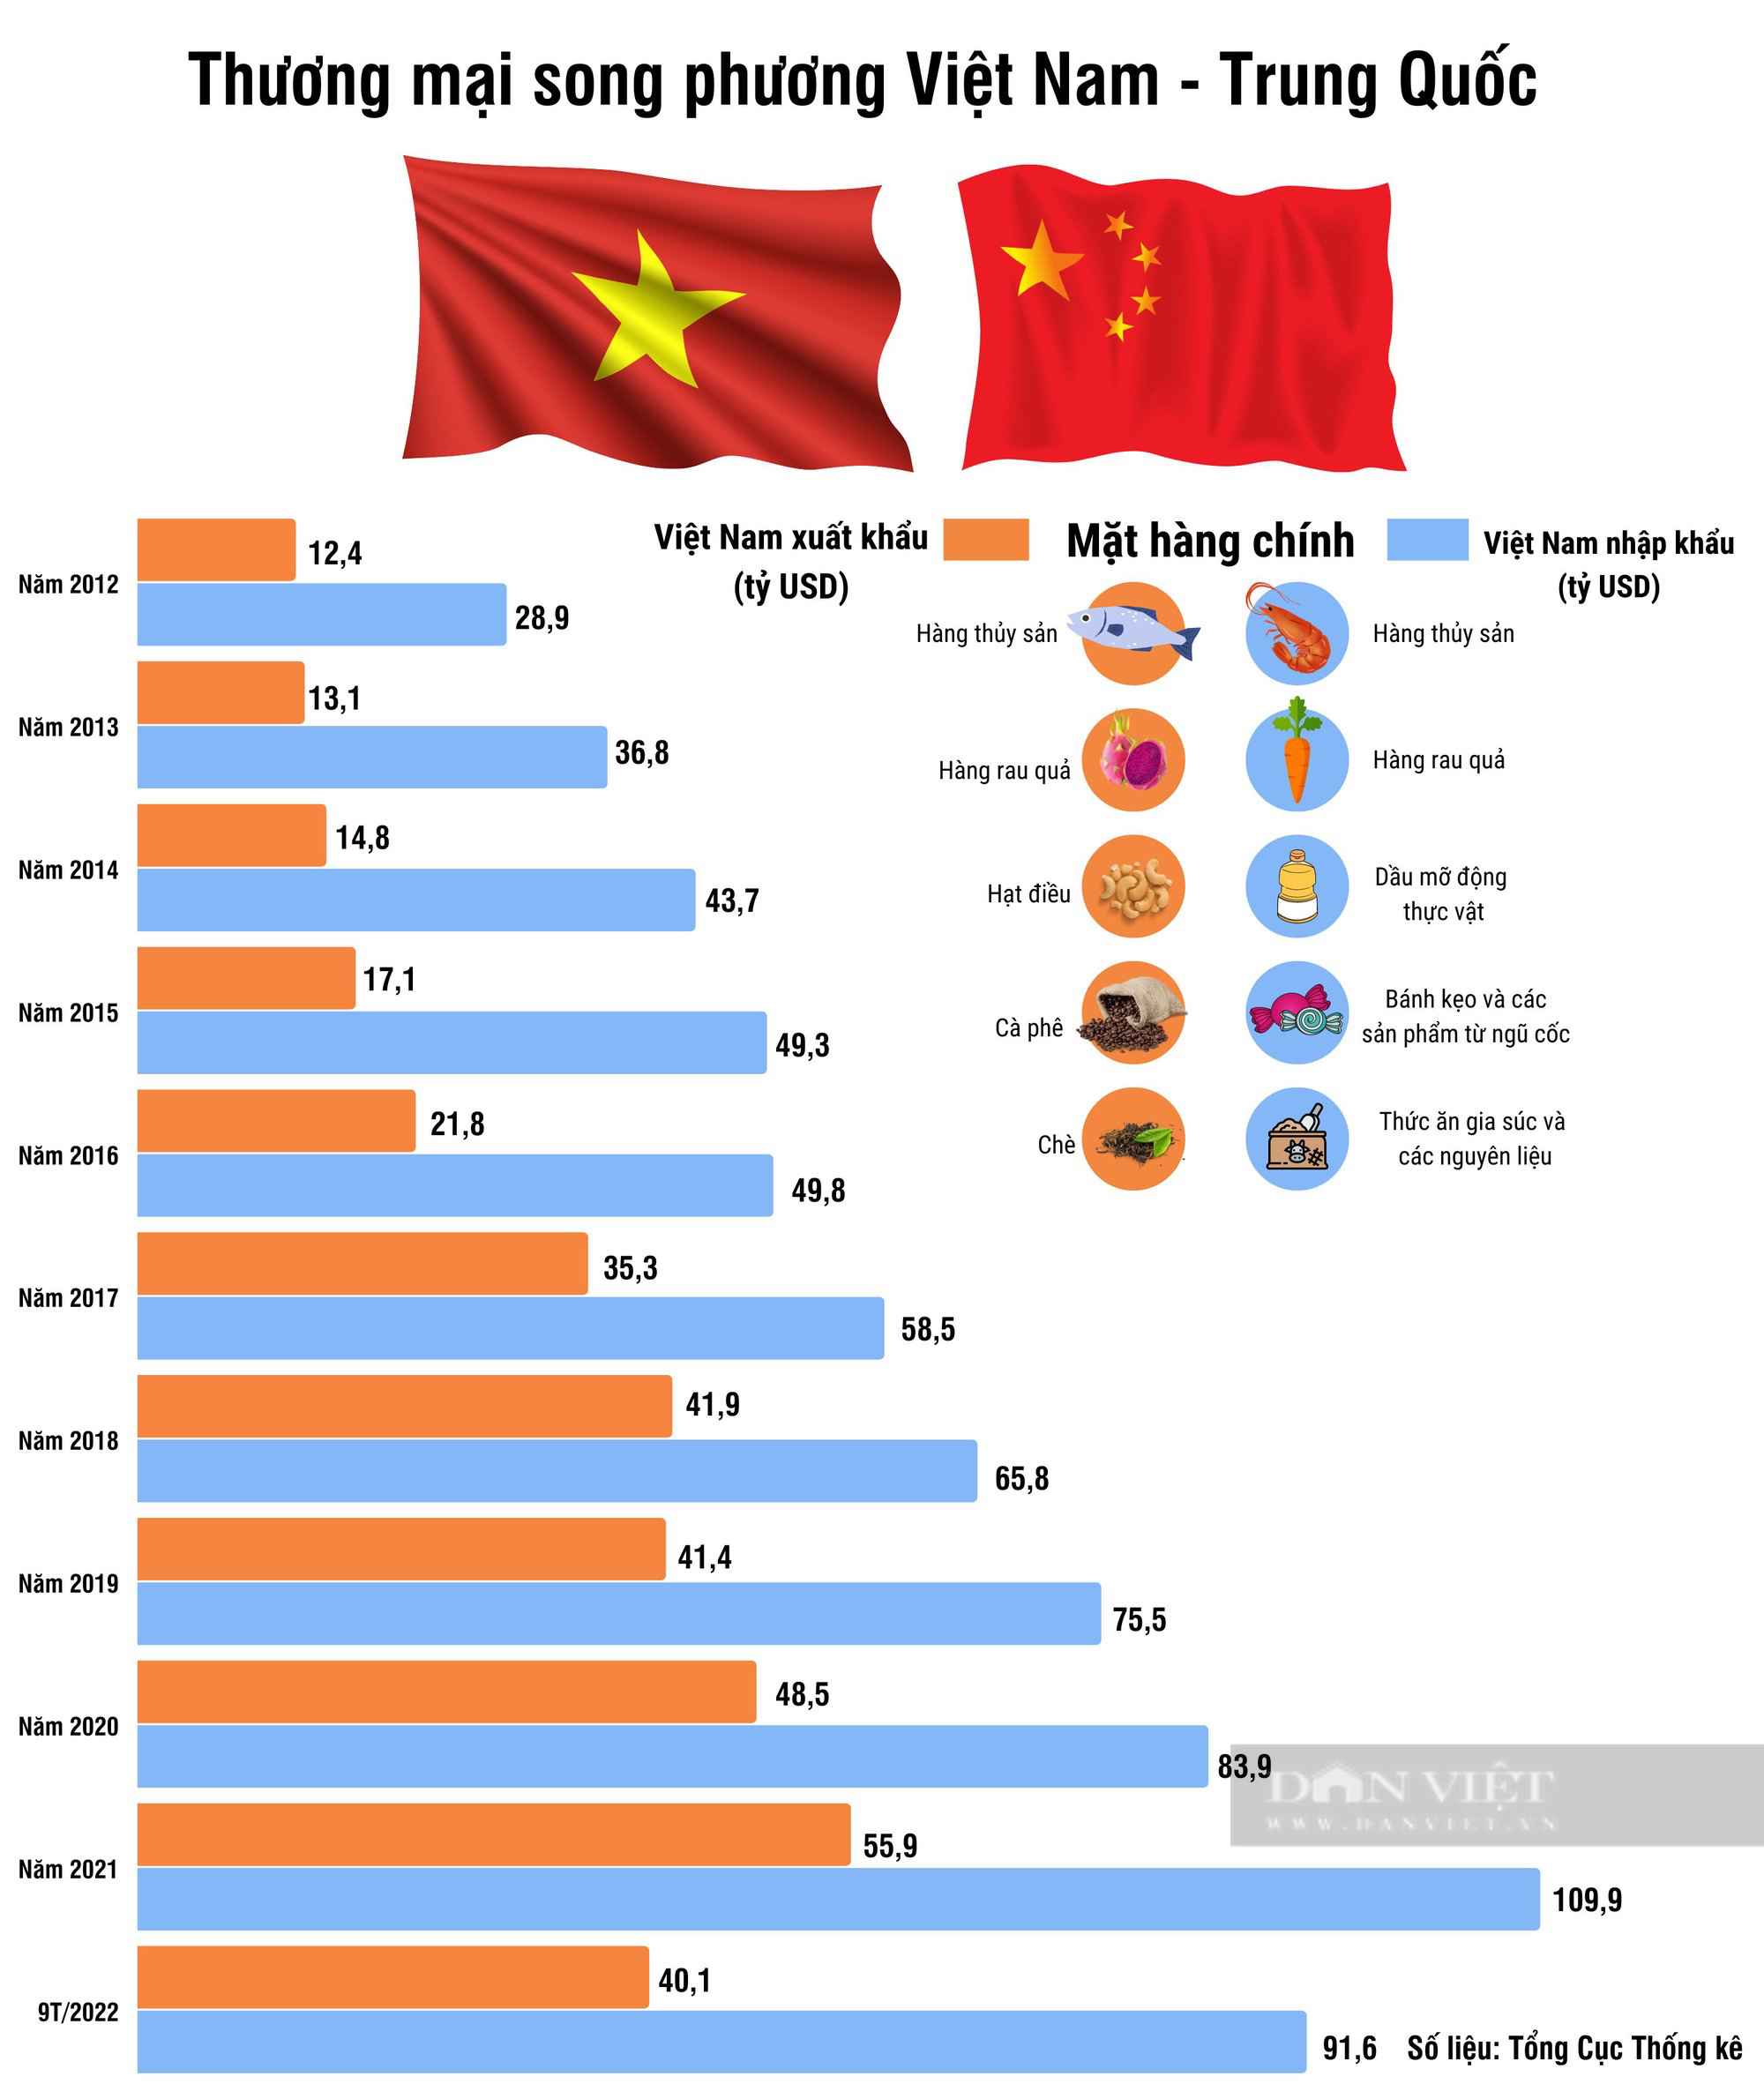 GS Võ Đại Lược: Chính sách Trung Quốc + đang có lợi cho Việt Nam - Ảnh 2.